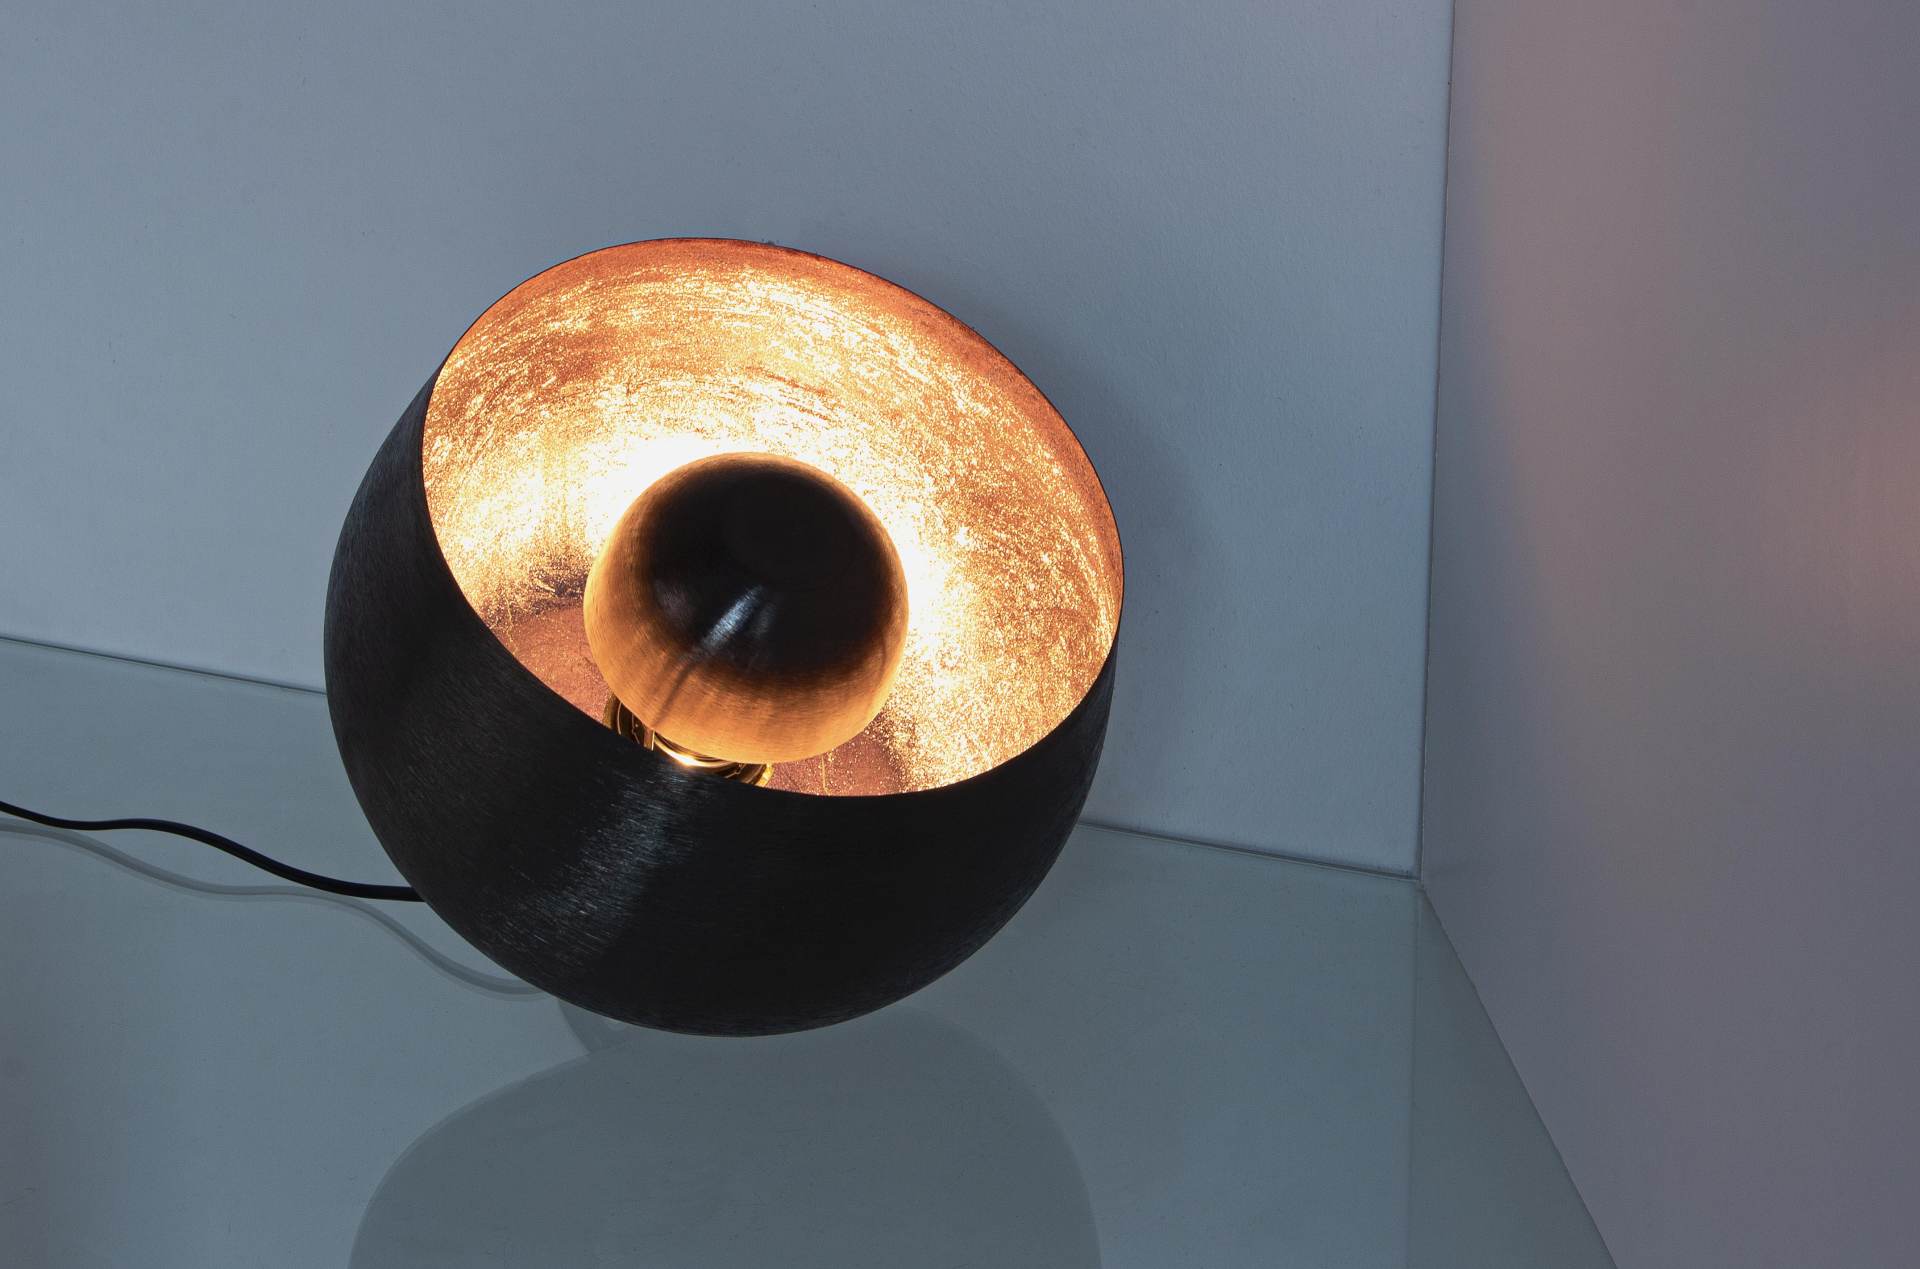 Die Tischleuchte Ishan überzeugt mit ihrem modernen Design. Gefertigt wurde sie aus Metall, welches einen schwarzen Farbton besitzt. Die Lampe hat eine Lichtquelle. Die Lampe besitzt eine Höhe von 24,5 cm.